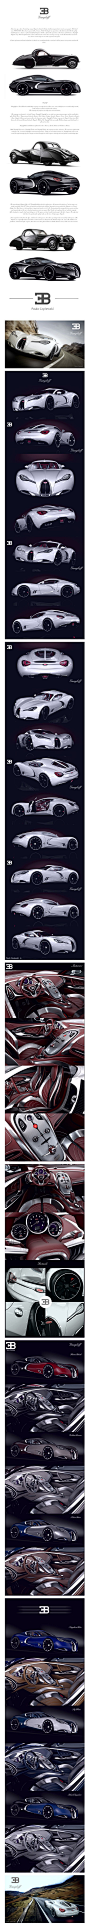 Bugatti Concept
#超跑#